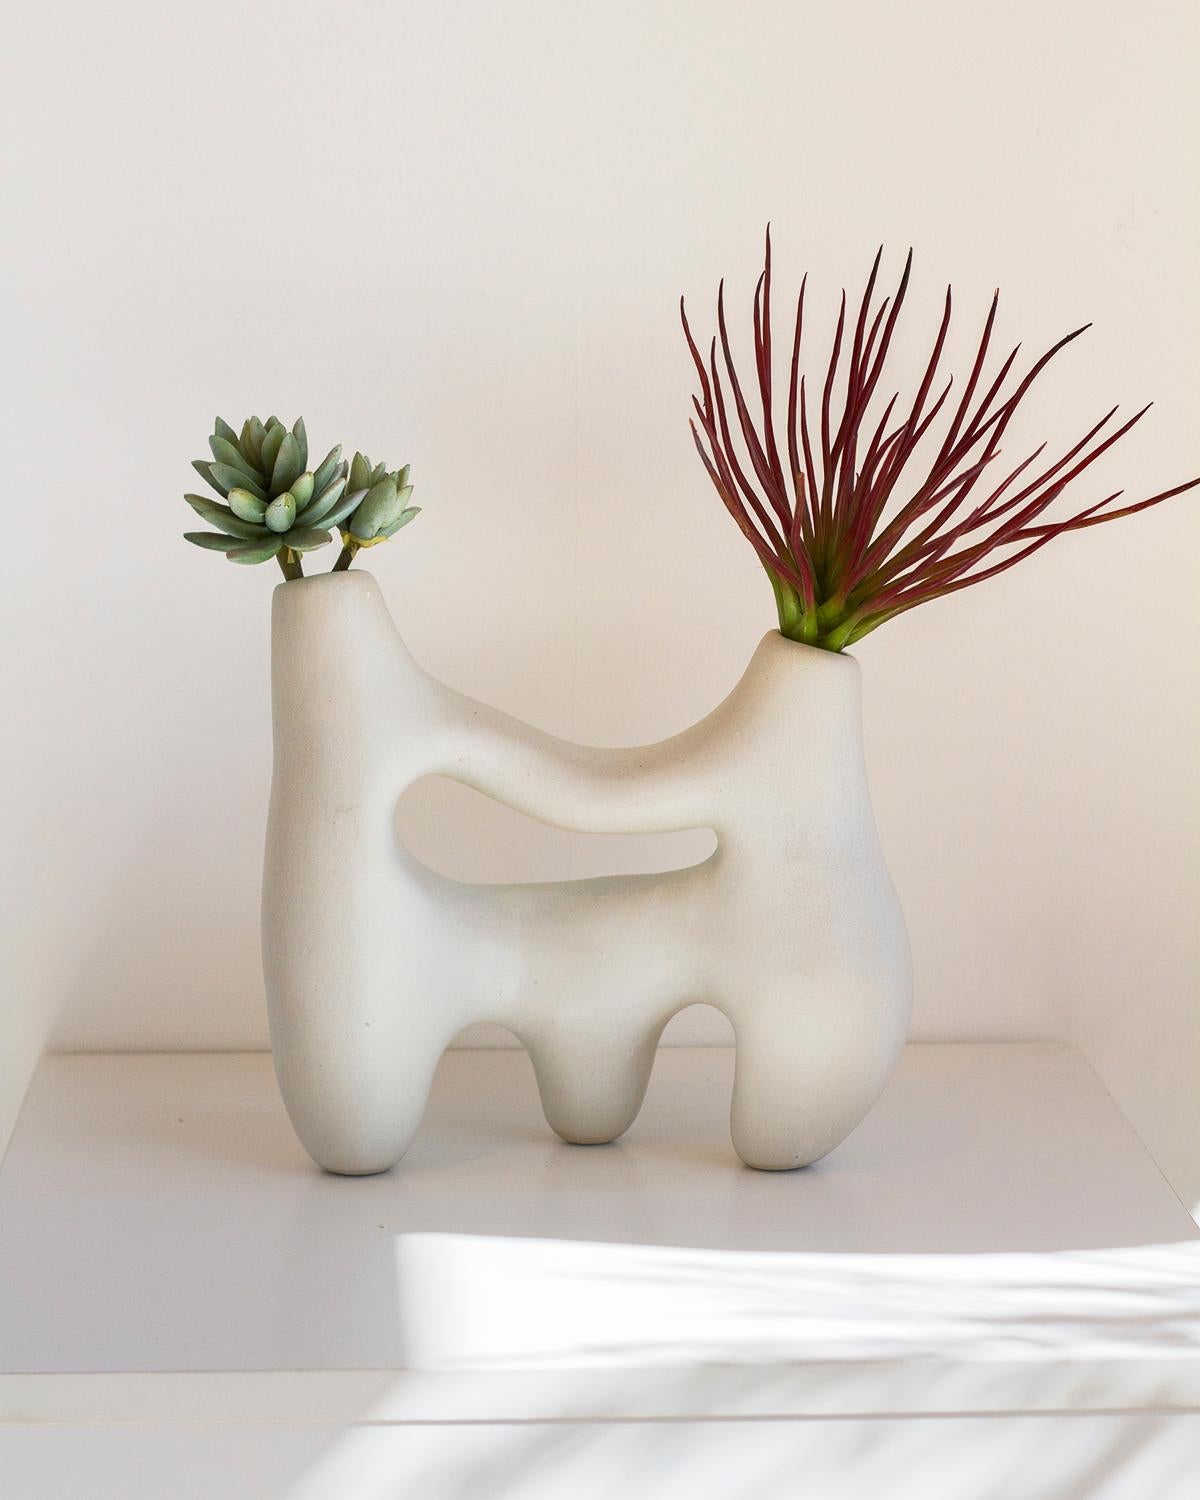 Die Symbiosis Clay Vase ist eine einzigartige skulpturale Vase aus weißem Ton. Sein rustikaler und doch minimalistischer Look passt perfekt zu organisch-modernen und futuristischen Einrichtungskonzepten. Diese mit Sorgfalt handgefertigte,